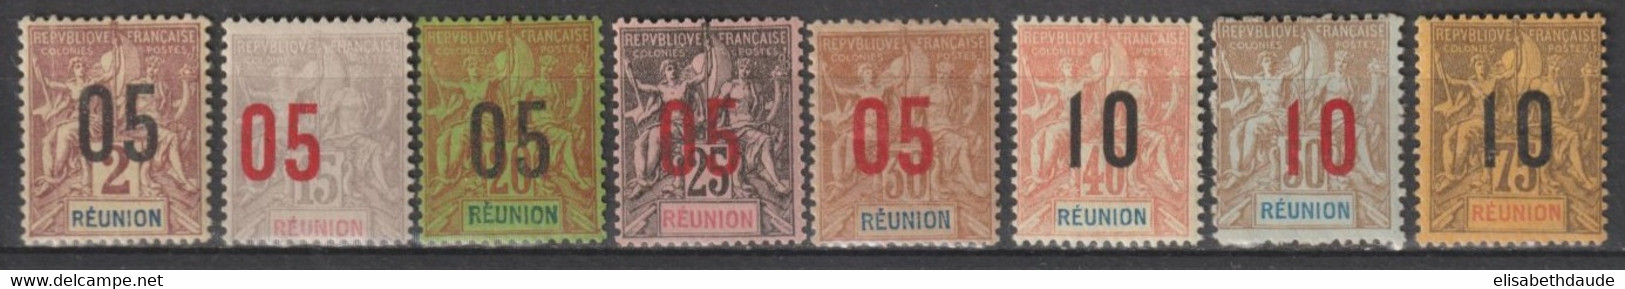 REUNION - 1912 - SERIE COMPLETE - YVERT N° 72/79 * MH (BELLE VARIETE DENTELURE DU 78 !) - COTE = 30+ EUR. - - Ongebruikt